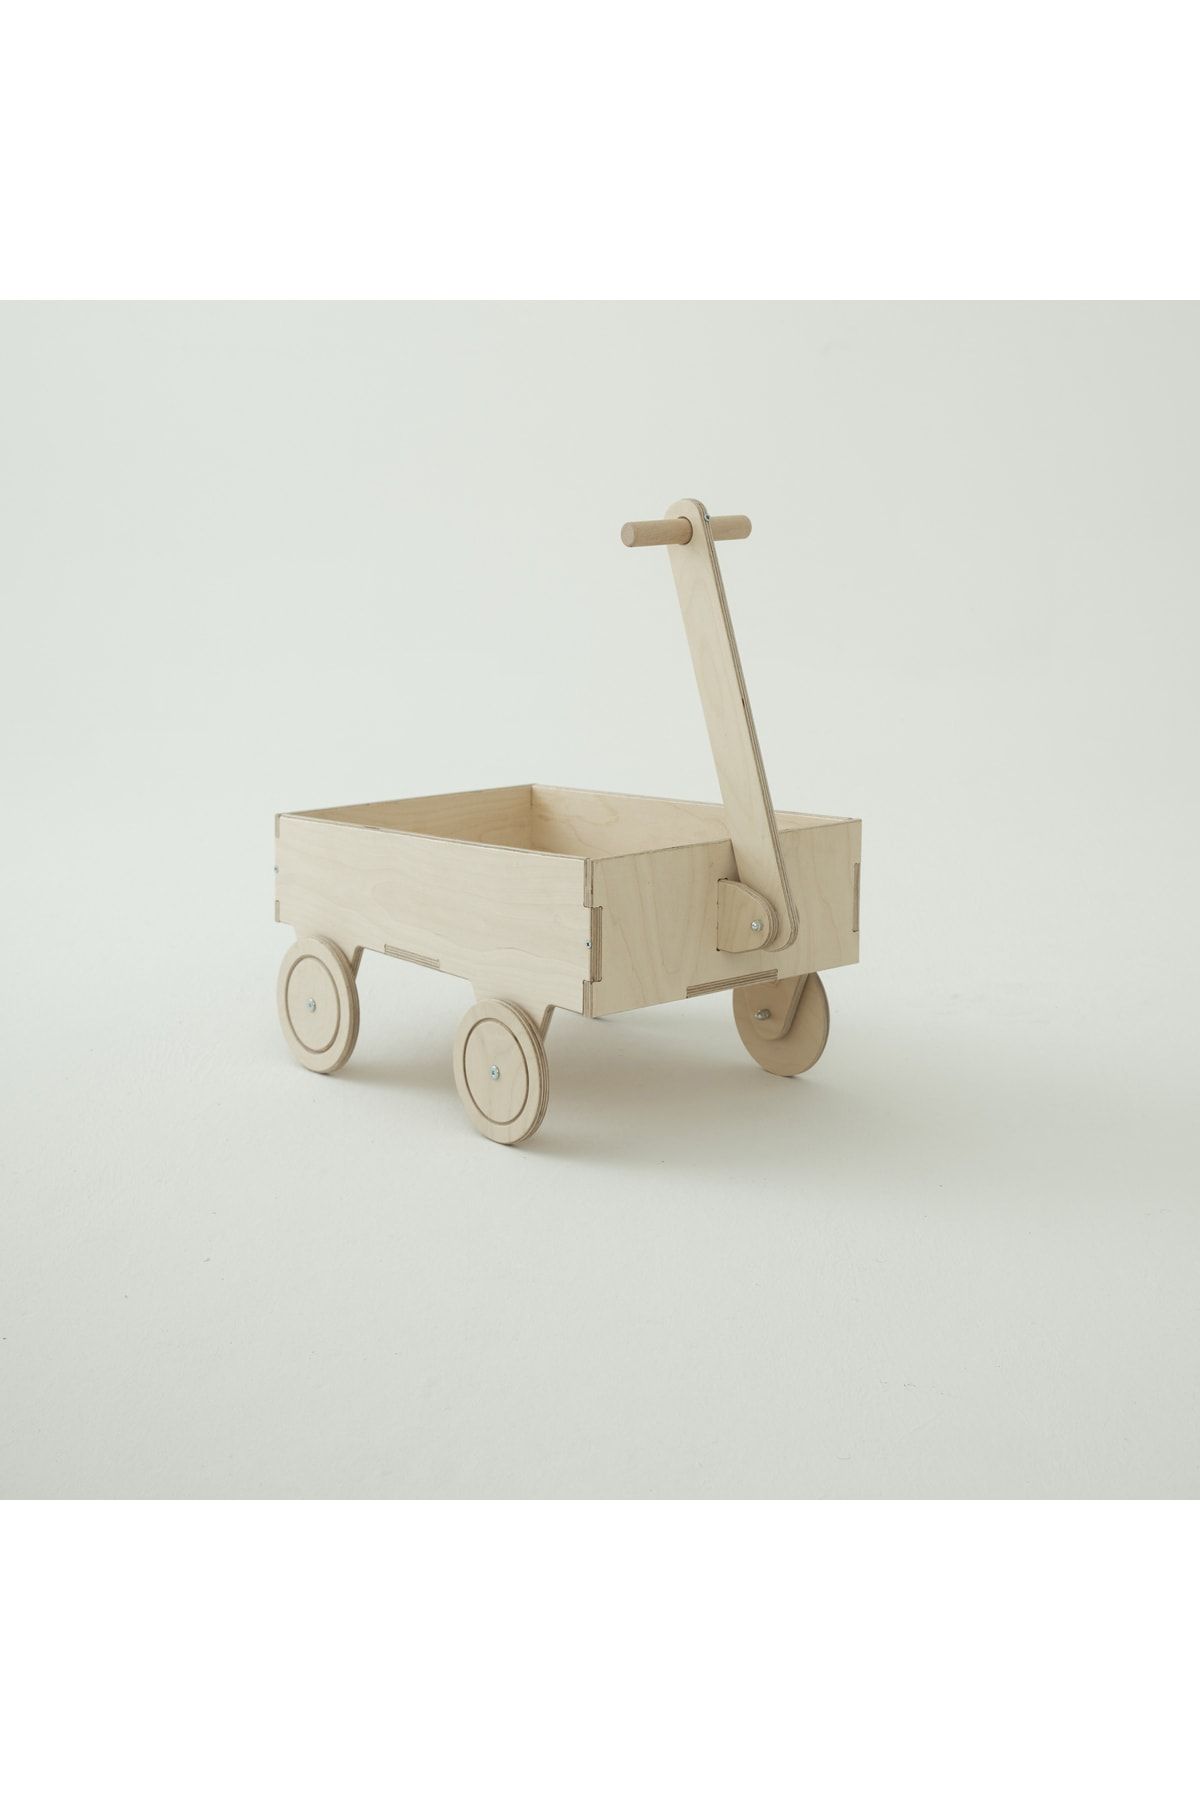 capsule kids Choo Choo (klasik Vagon Oyuncak Kutusu ) - Çocuk Odası Oyuncak Doğal Montessori Ahşap Cilasız